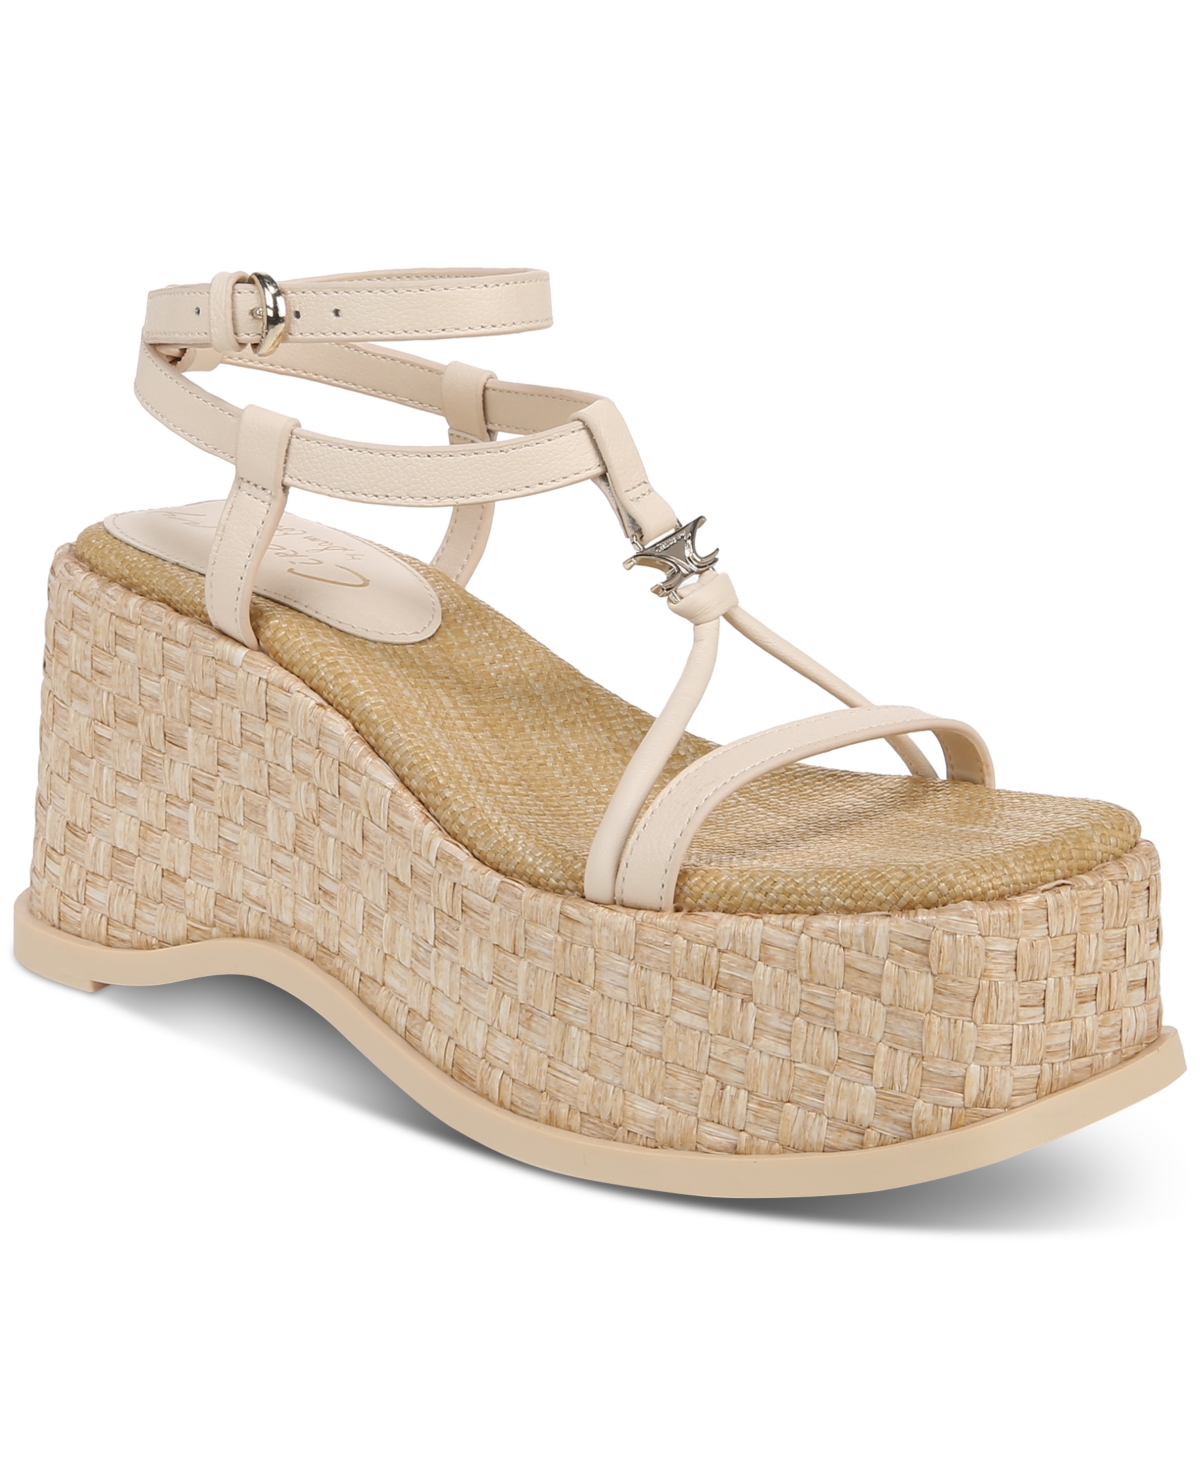 Odette Strappy Wedge Platform Sandals - Vanilla Bean